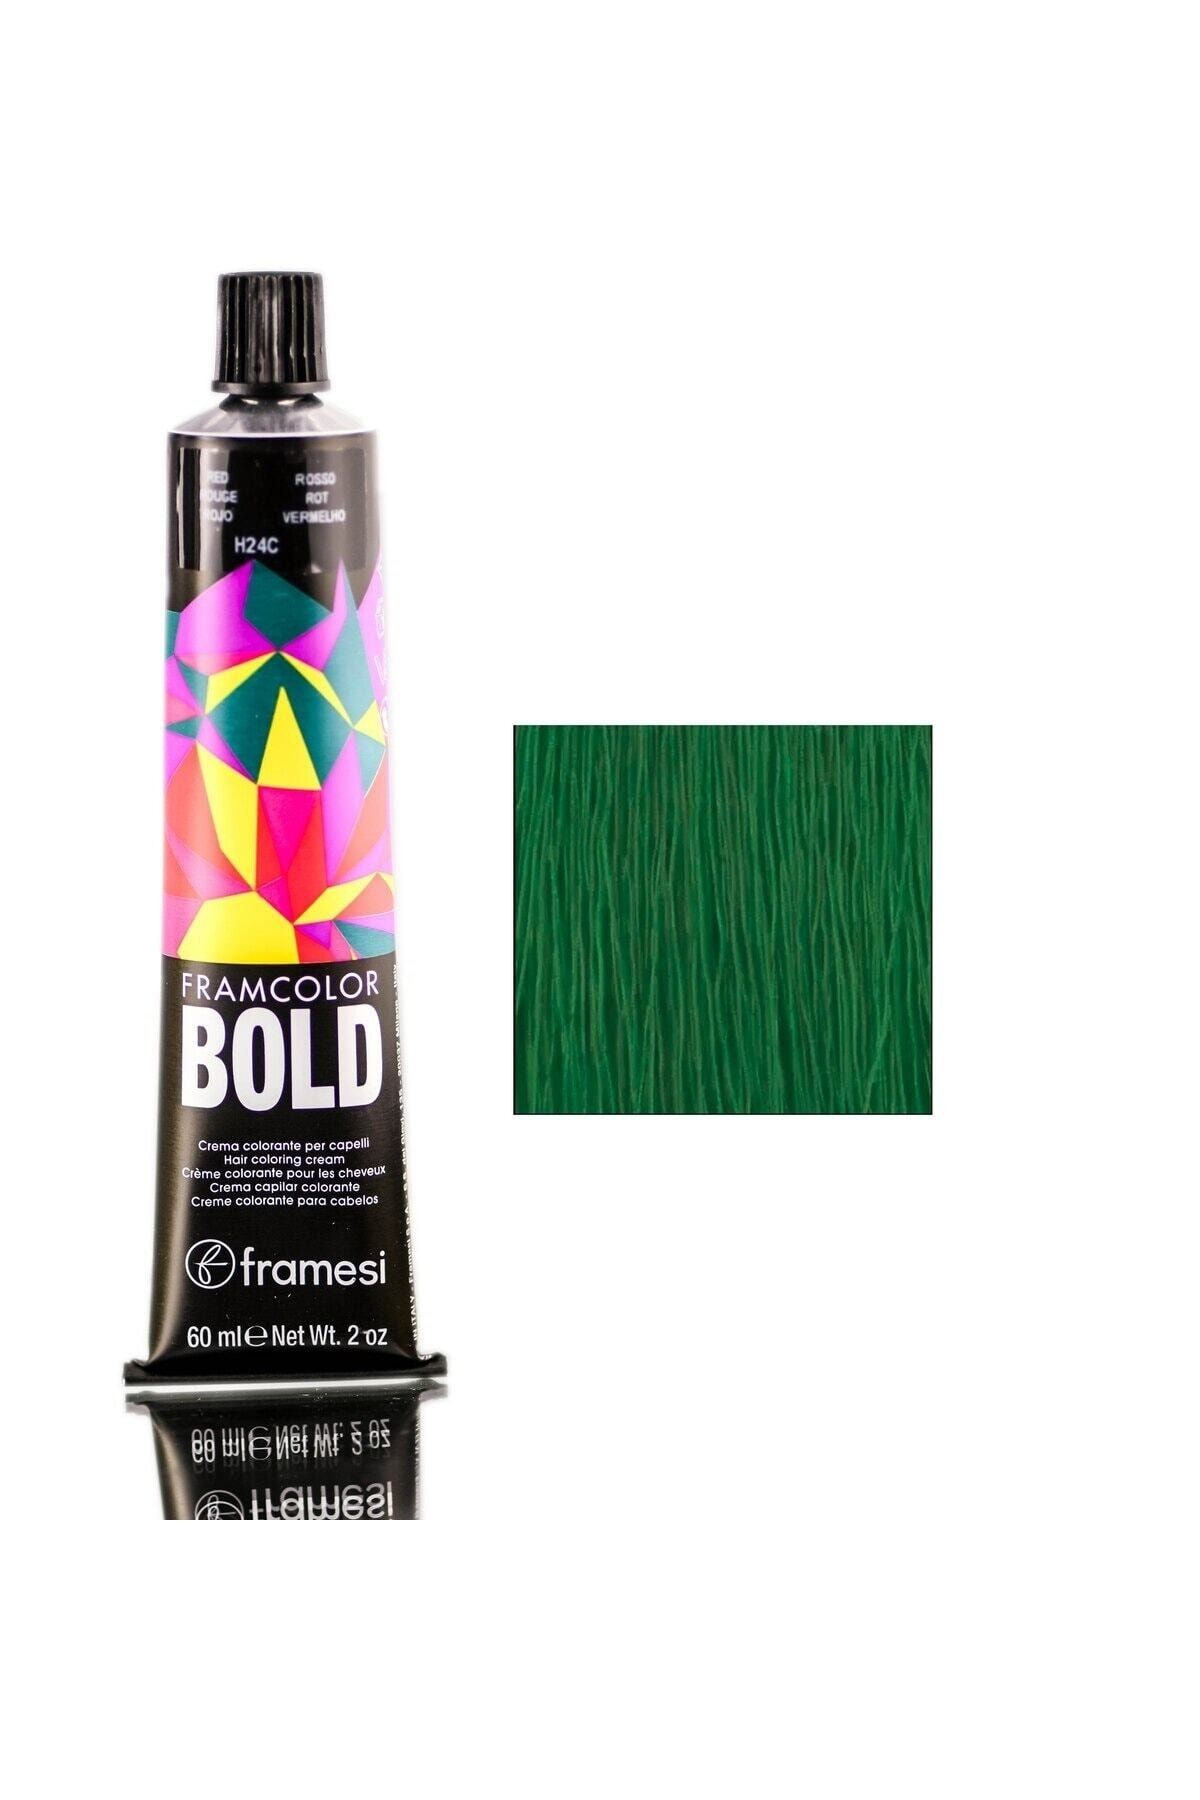 FRAMESİ Framcolor Bold 60ml Yeşil